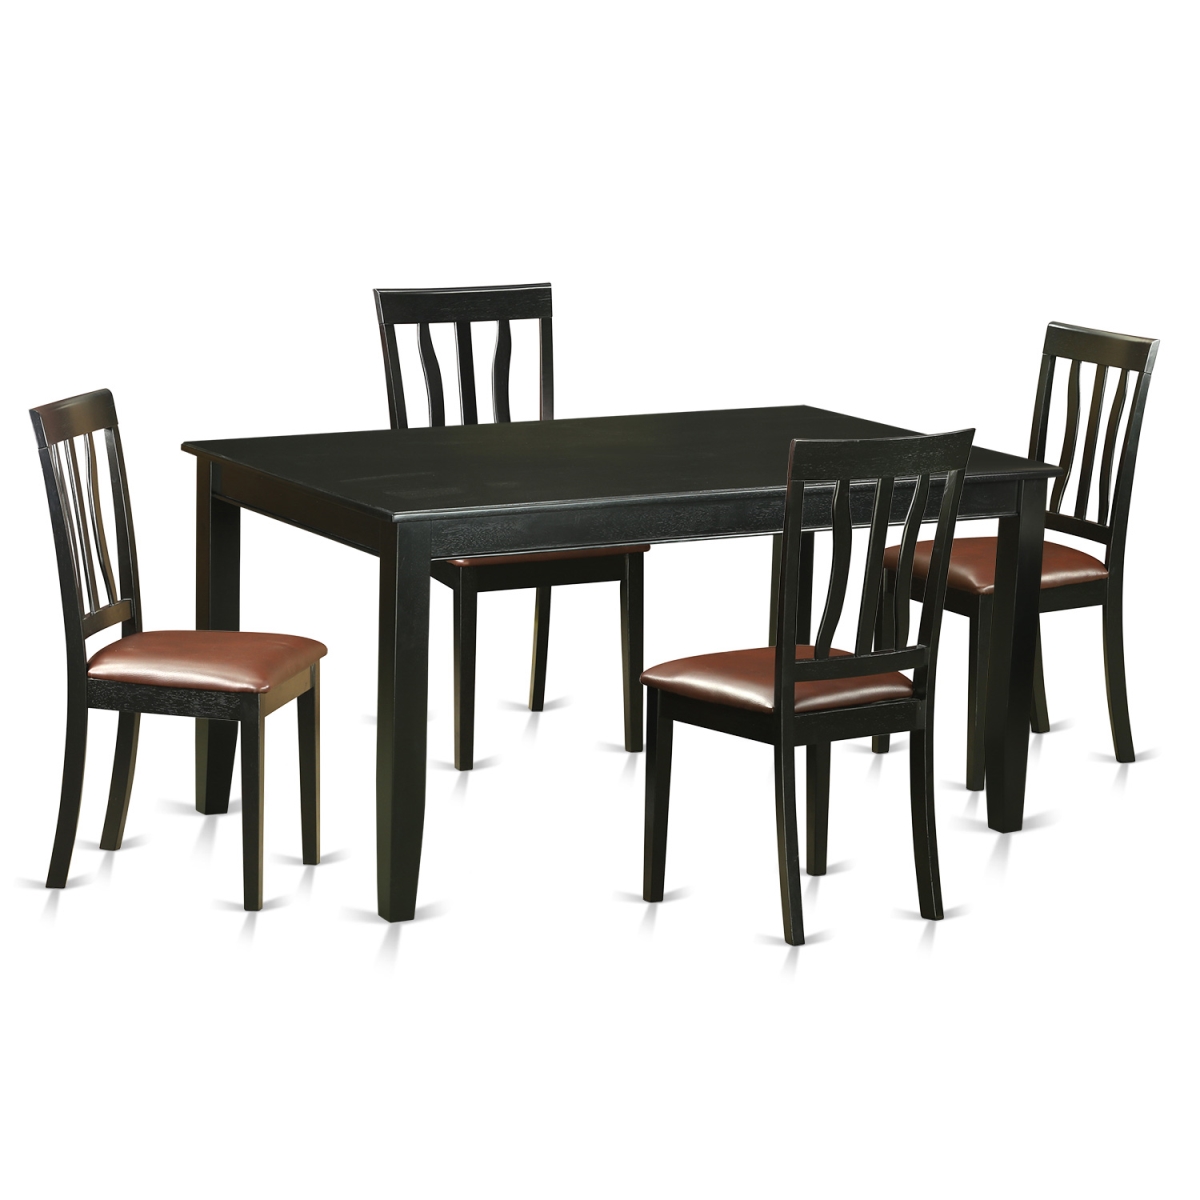 Duan5-blk-lc Dinette Set - Table & 4 Chairs, Black - 5 Piece